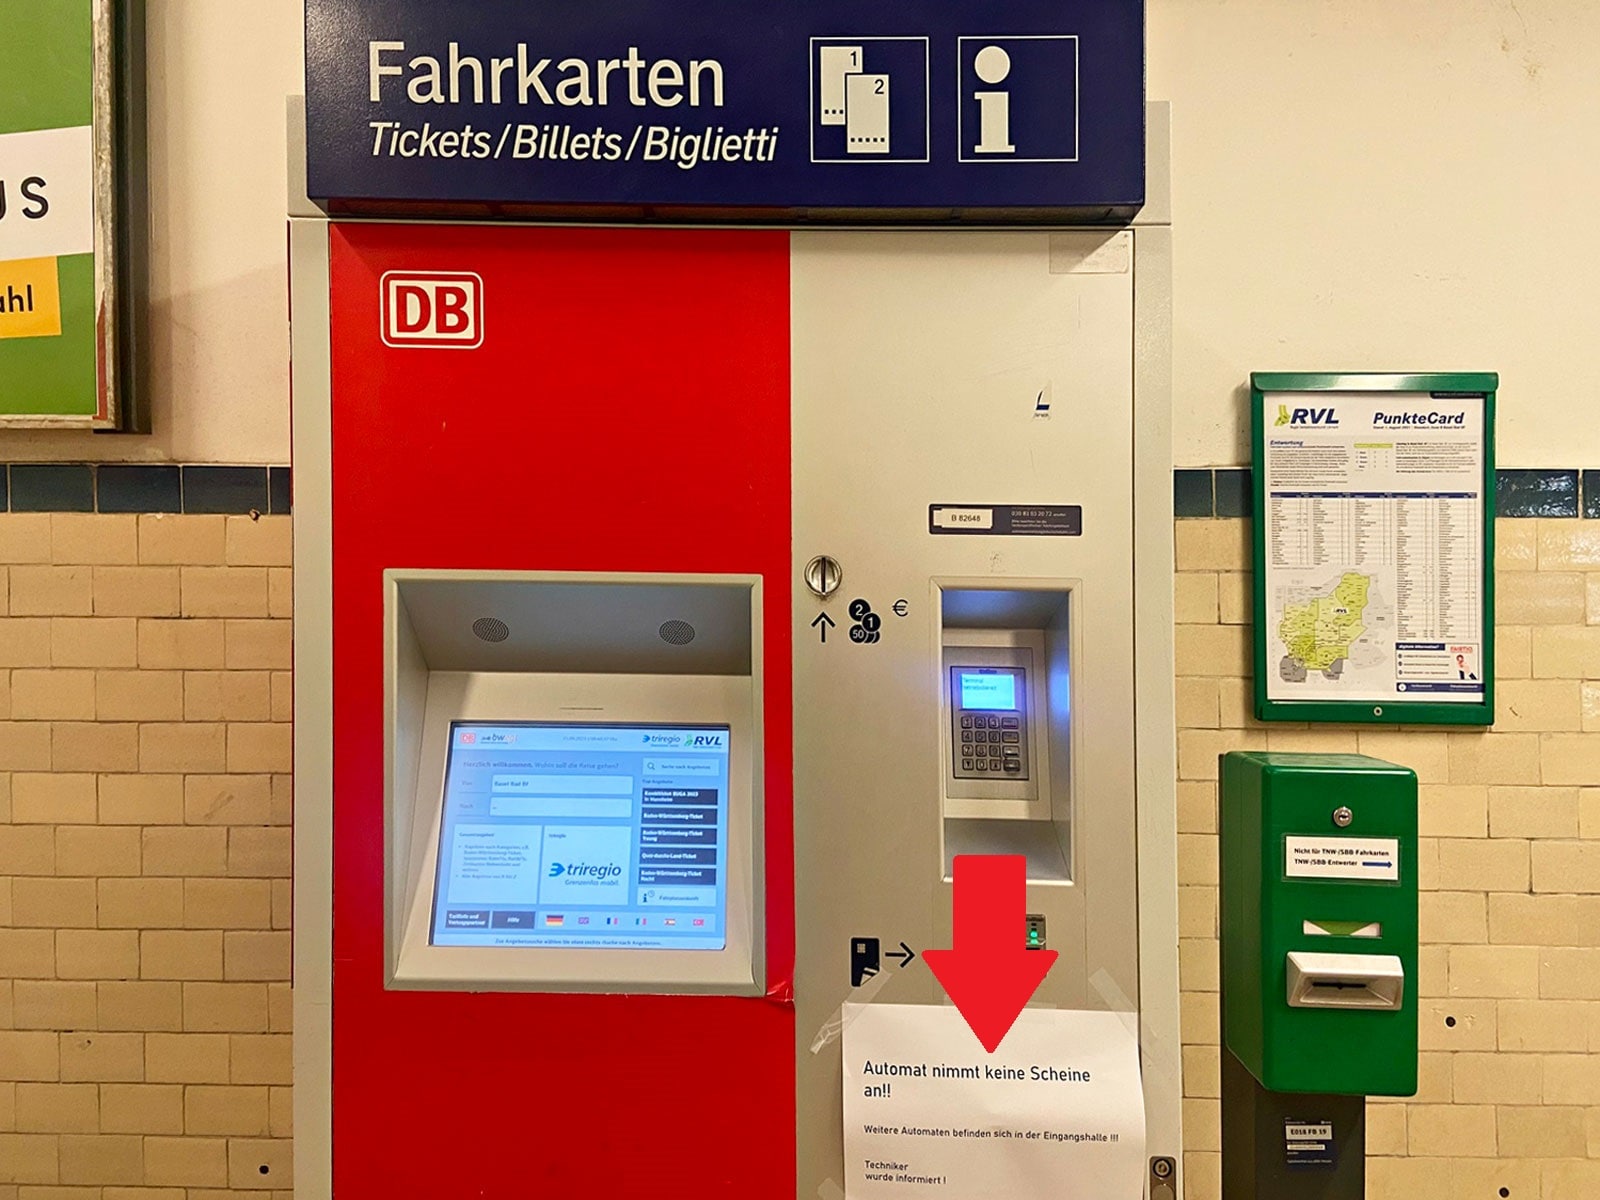 ドイツの駅ターミナルに設置された券売機。「紙幣は使えません。整備士には連絡済み」との貼り紙。紙幣を巡るトラブルが起こった模様ですが、ドイツ語が読めない外国人旅行者には故障が伝わりません。（画像：筆者撮影）